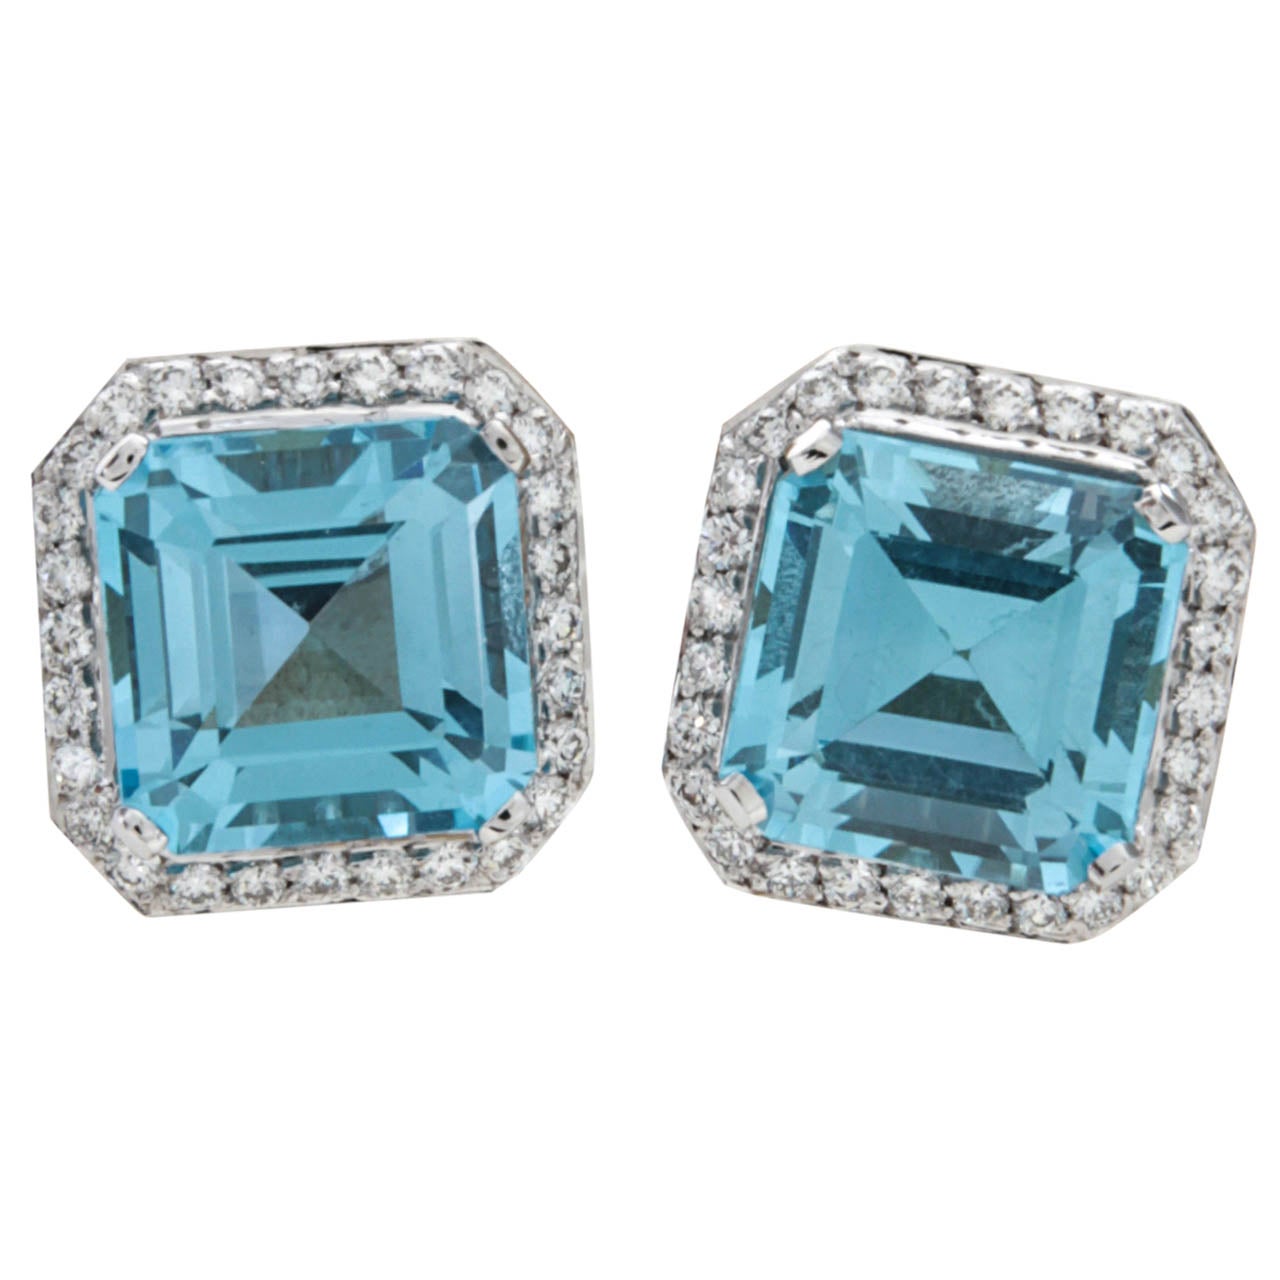 Stunning Blue Topaz Squared Diamond Earrings